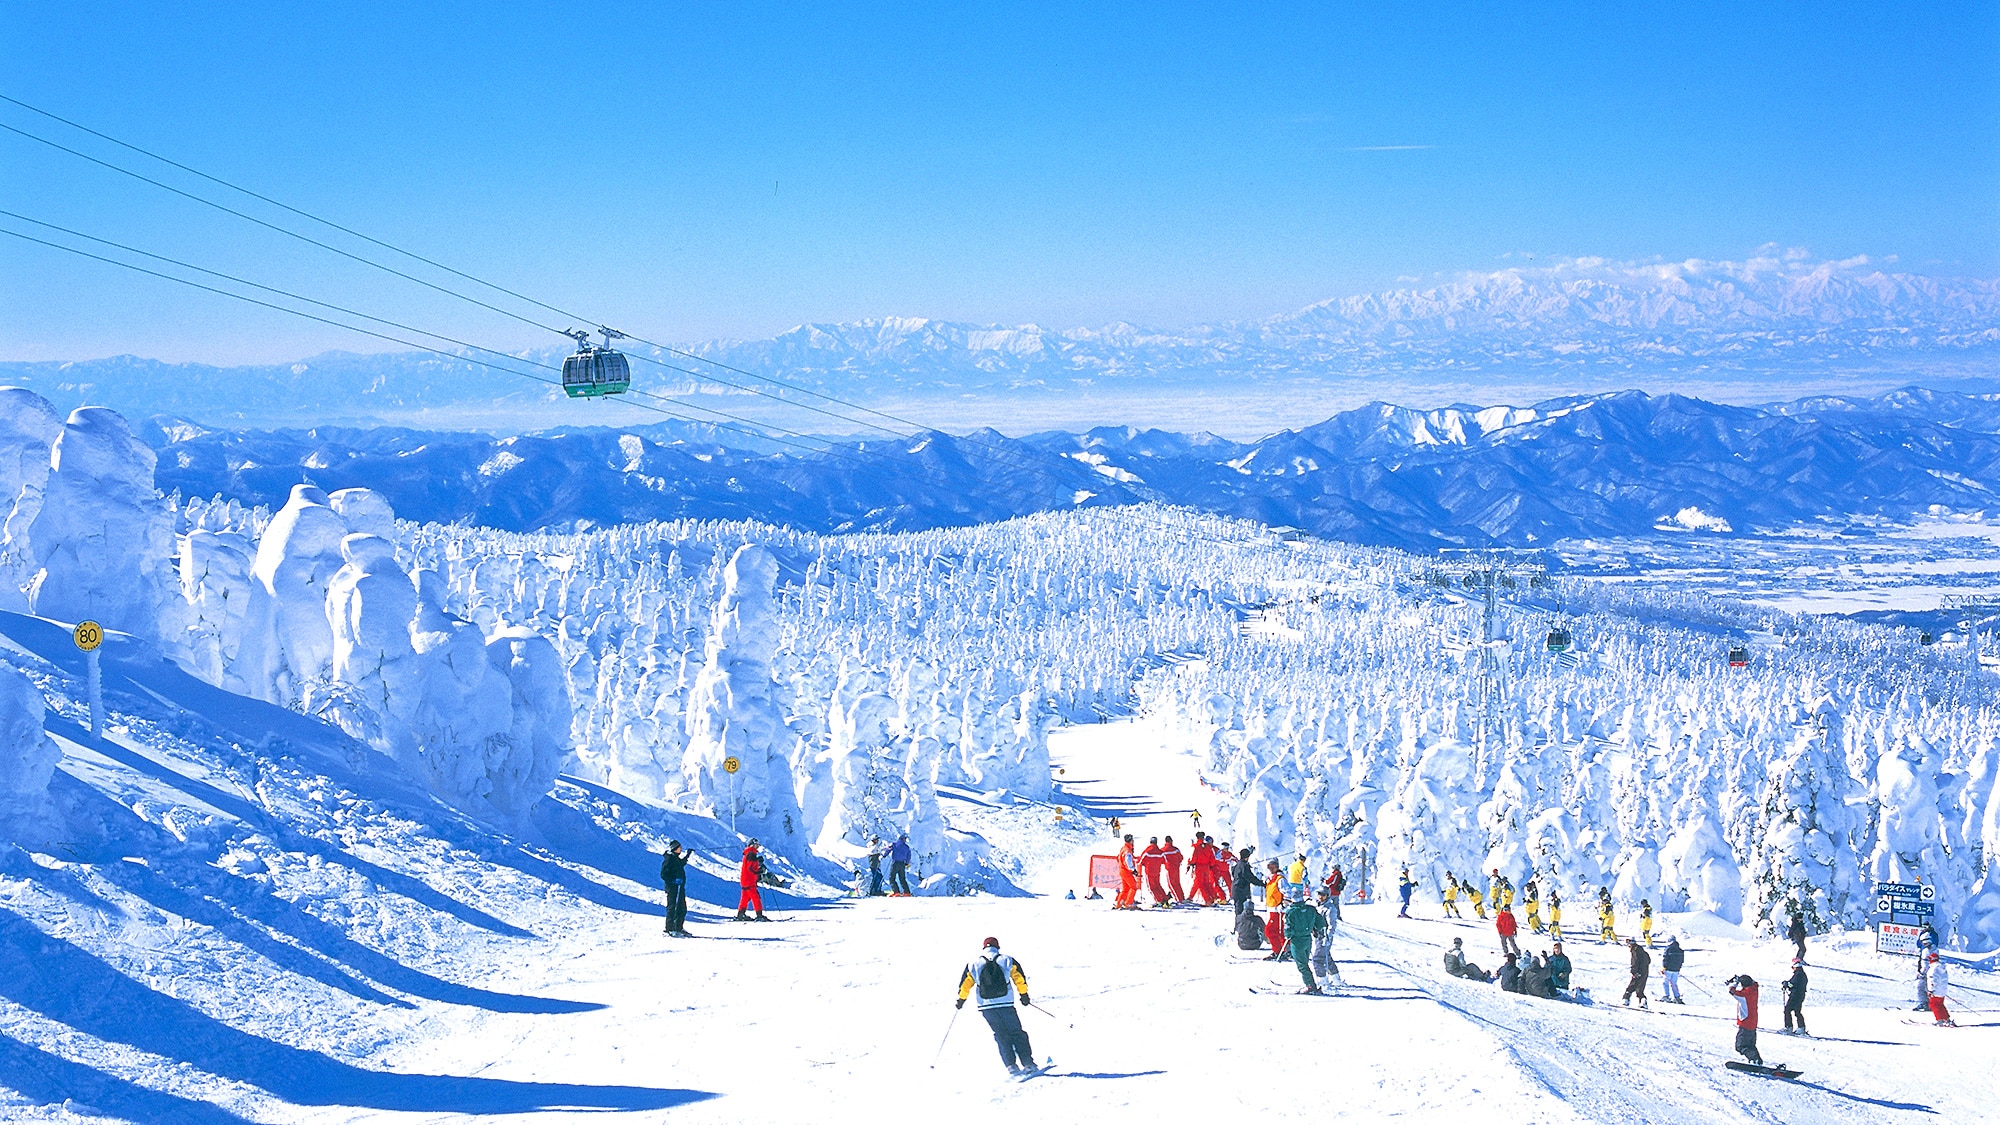 Zao Ski Resort